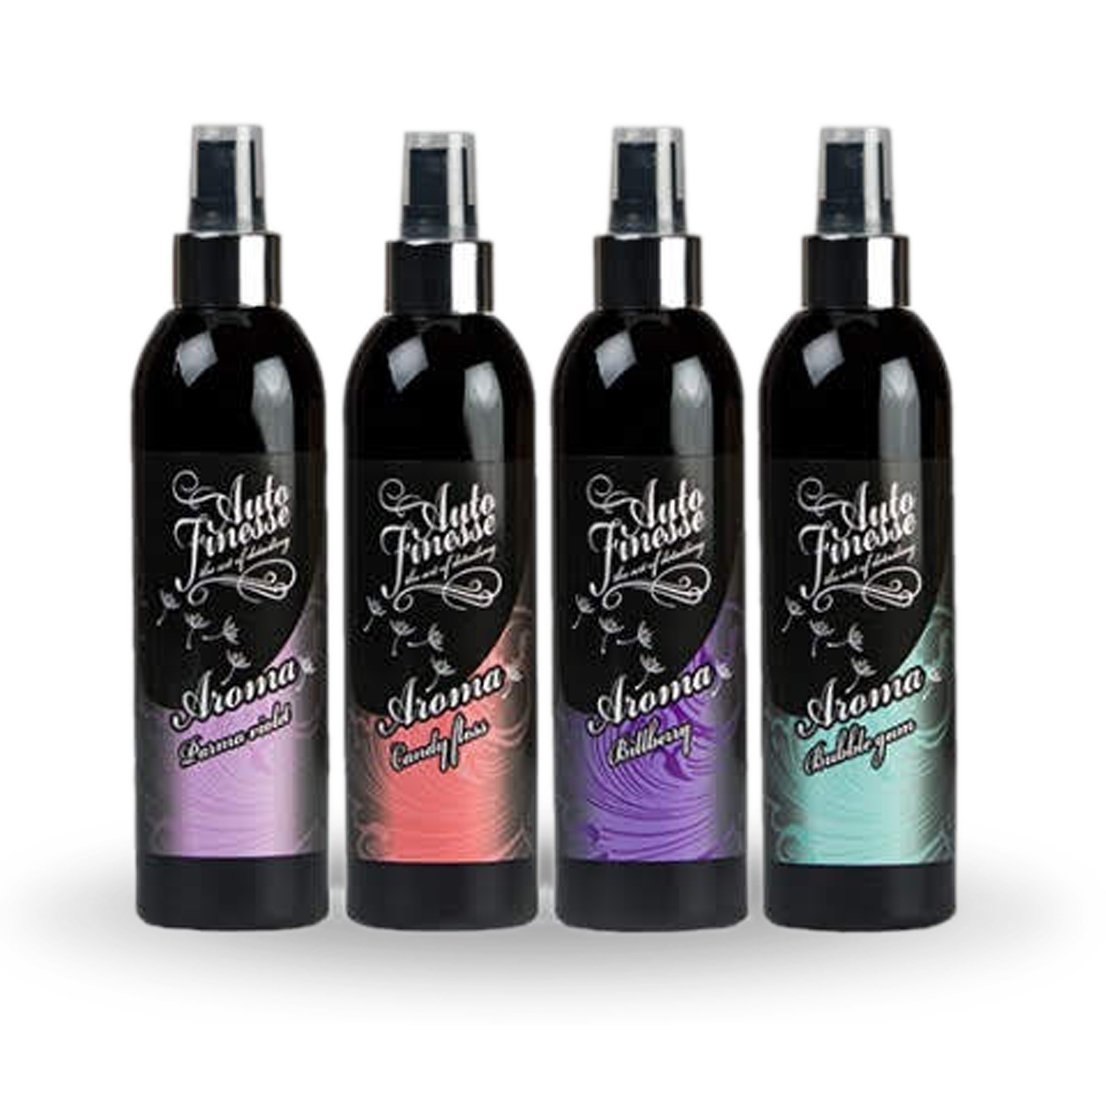 Parma Violets Spray